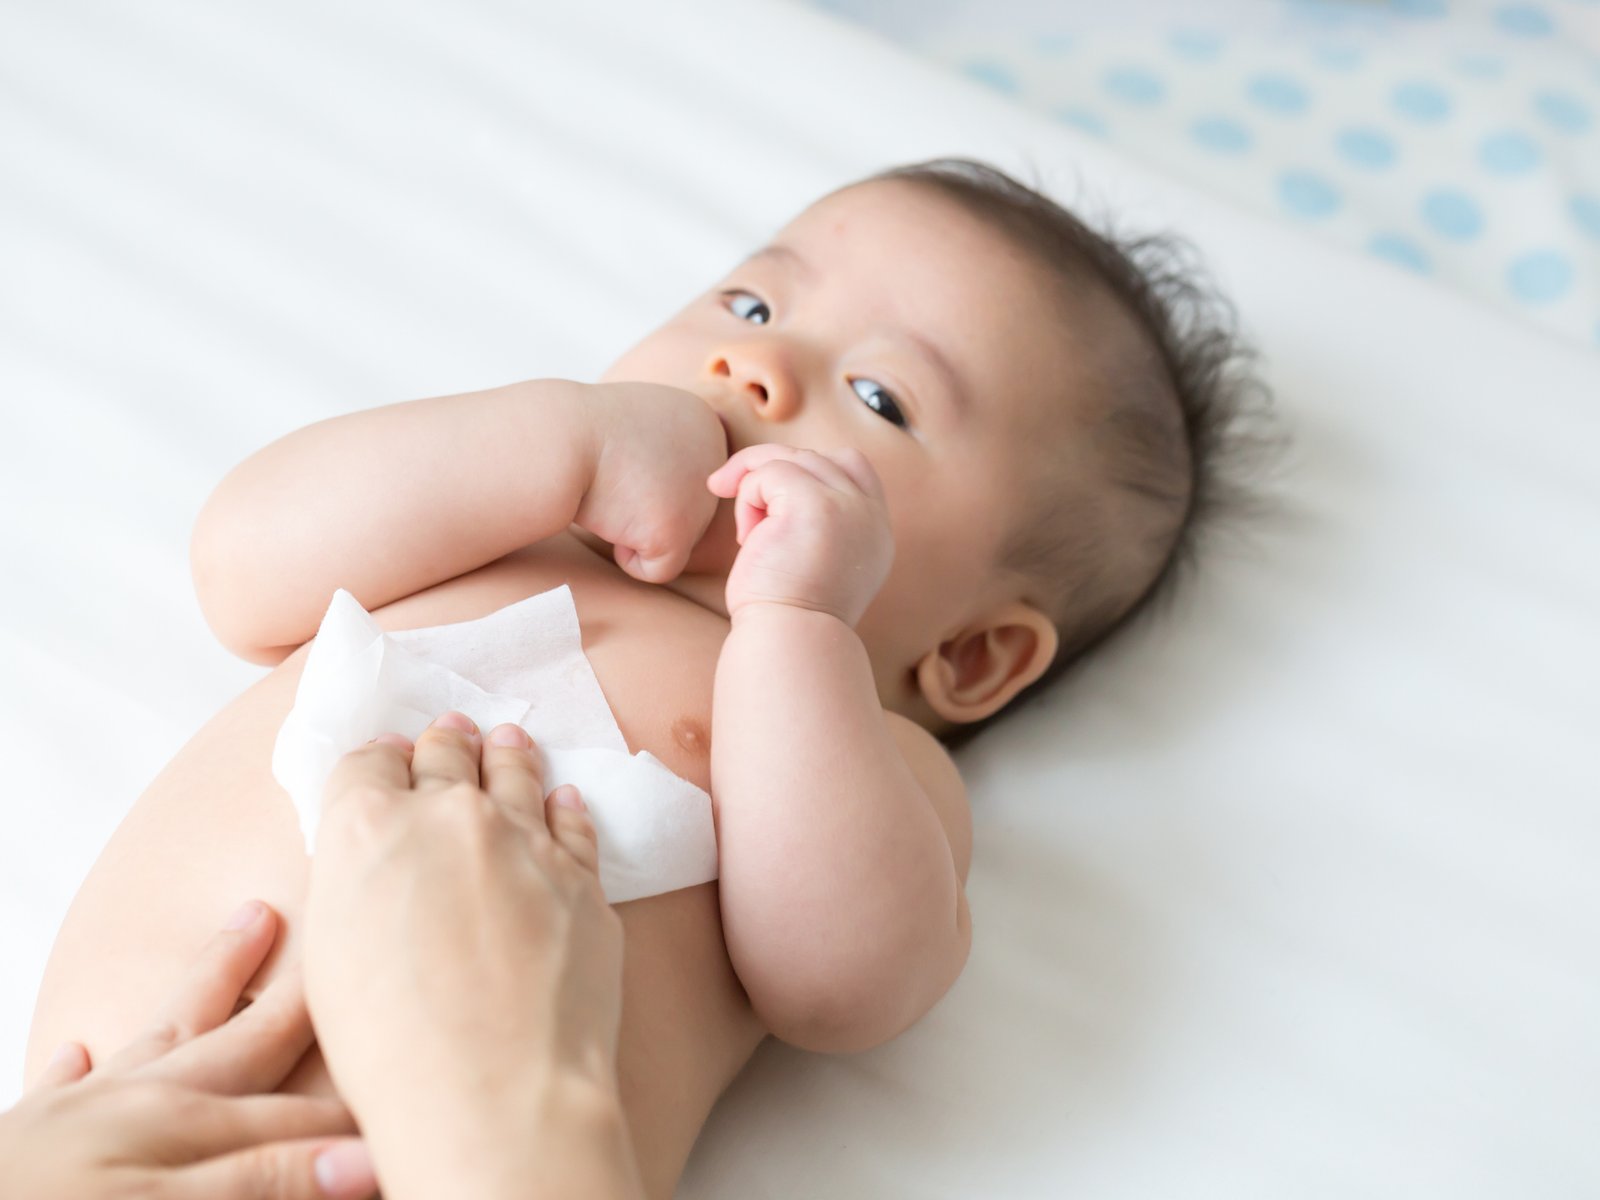 144 Care4You Sensitive feuchte Baby Pflegetücher Feuchttücher Reinigung Haut 